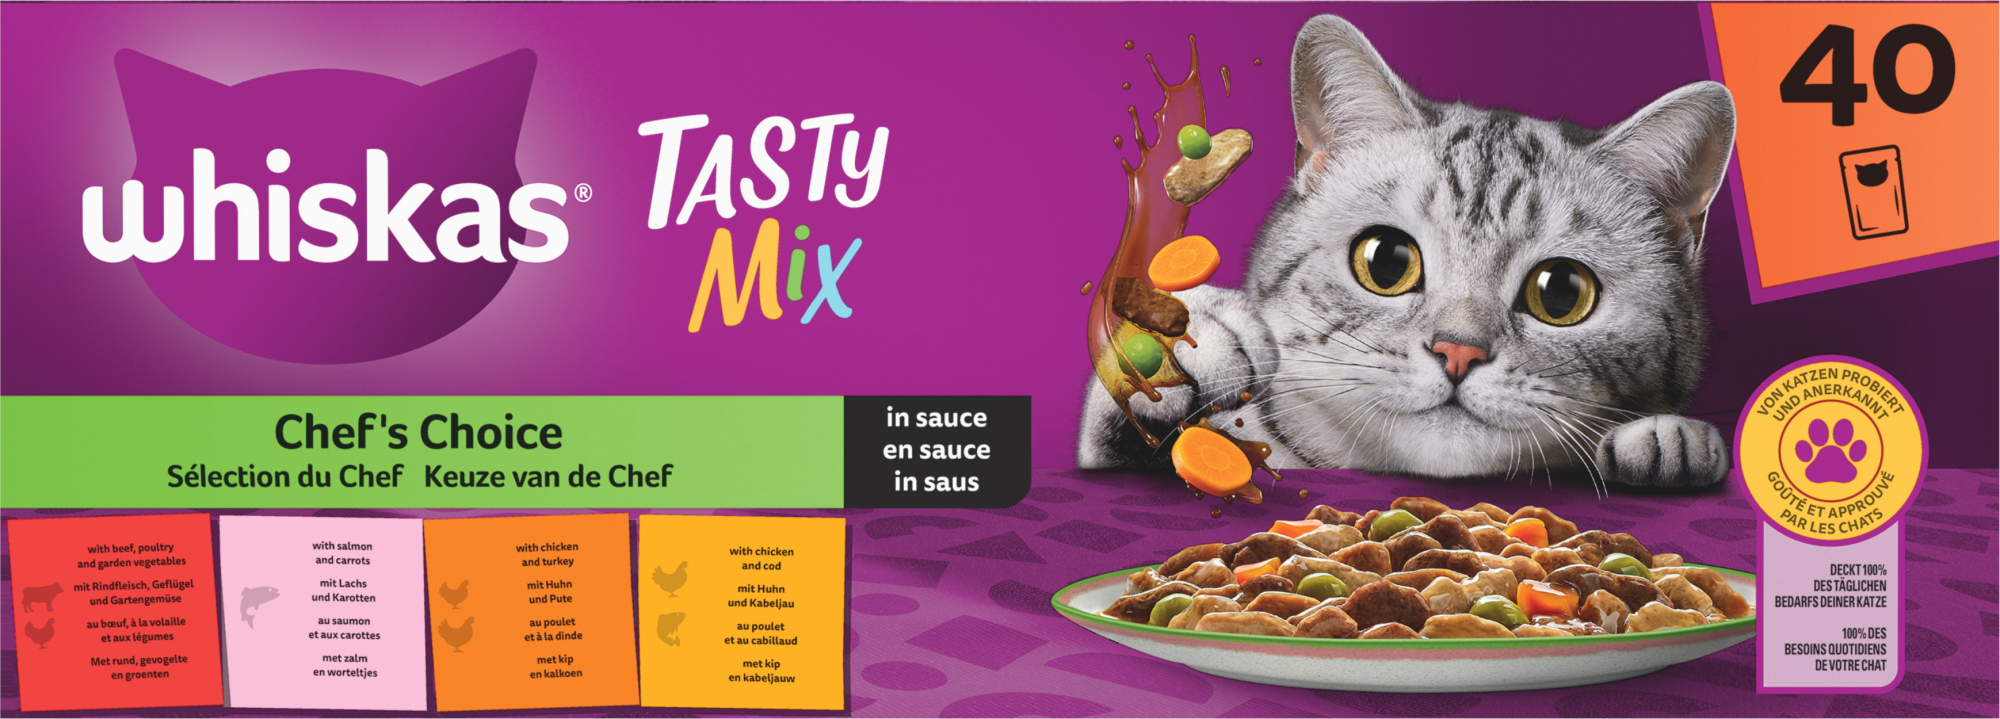 WHISKAS Tasty Mix Frische Beutel Chef's Selection in Soße für ausgewachsene Katzen 4 Sorten